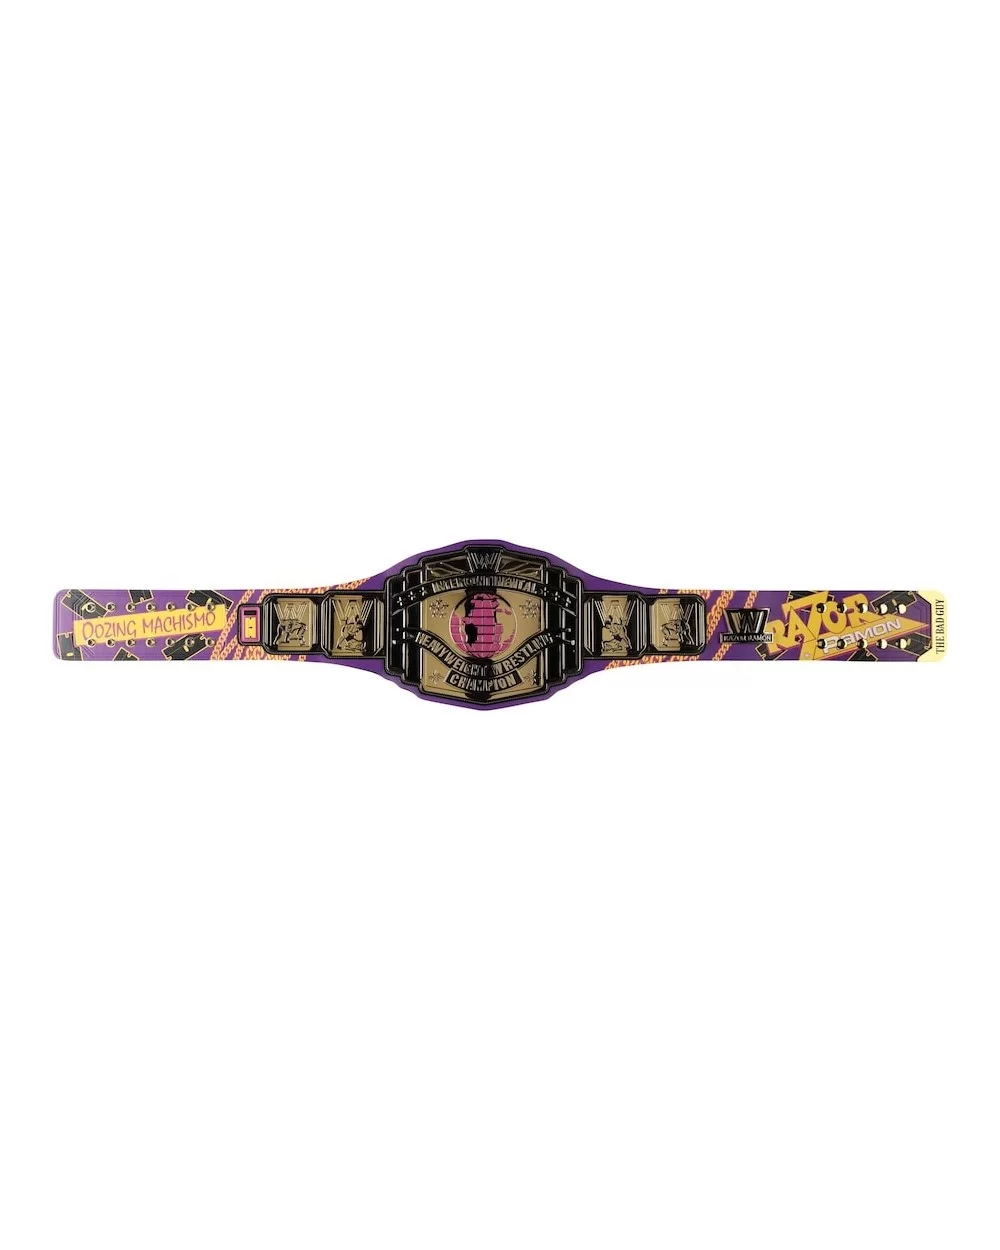 Razor Ramon Signature Series Championship Replica Title Belt $144.00 Collectibles